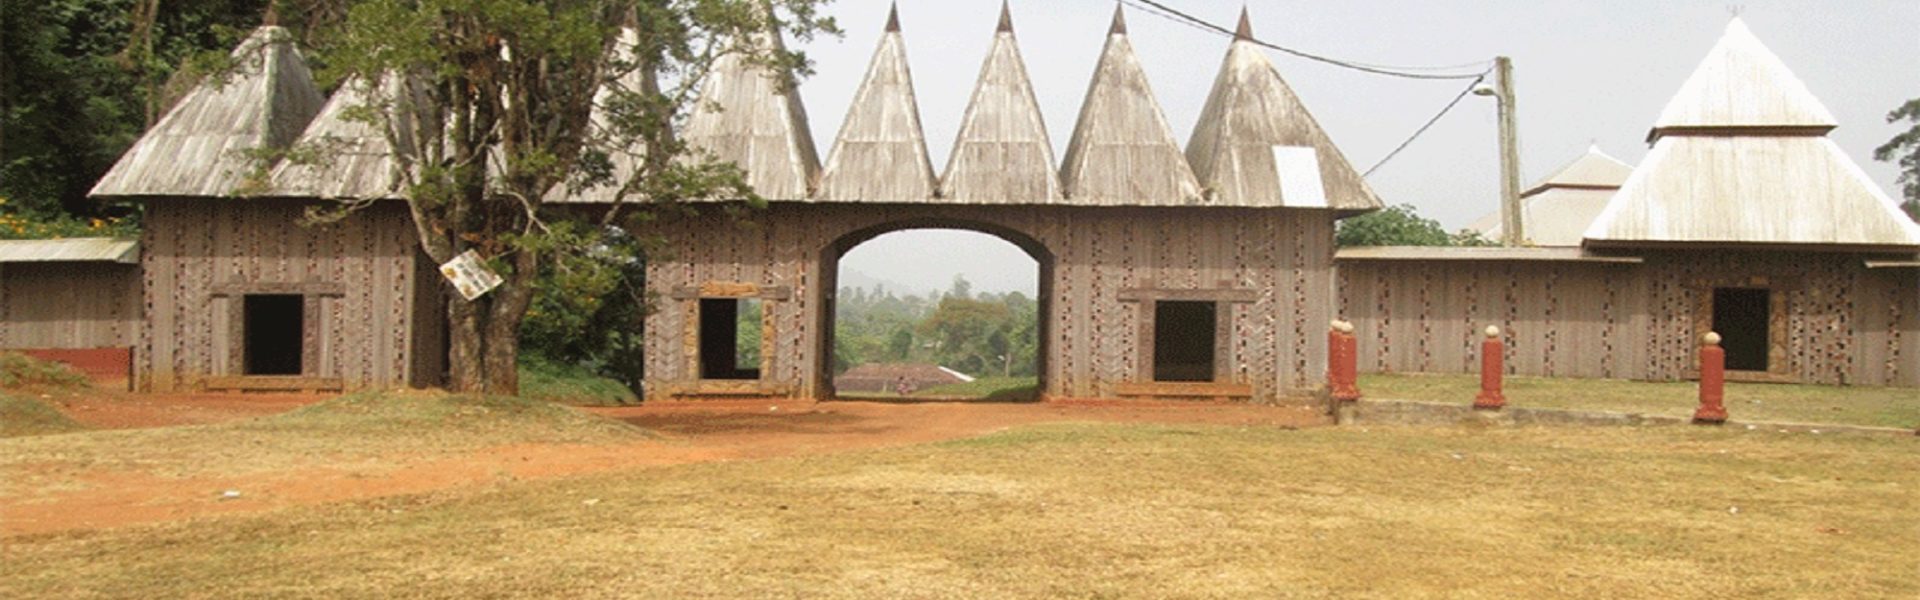 Circuit Afrique miniature à travers les chefferies du Cameroun - Chefferie de Baleng